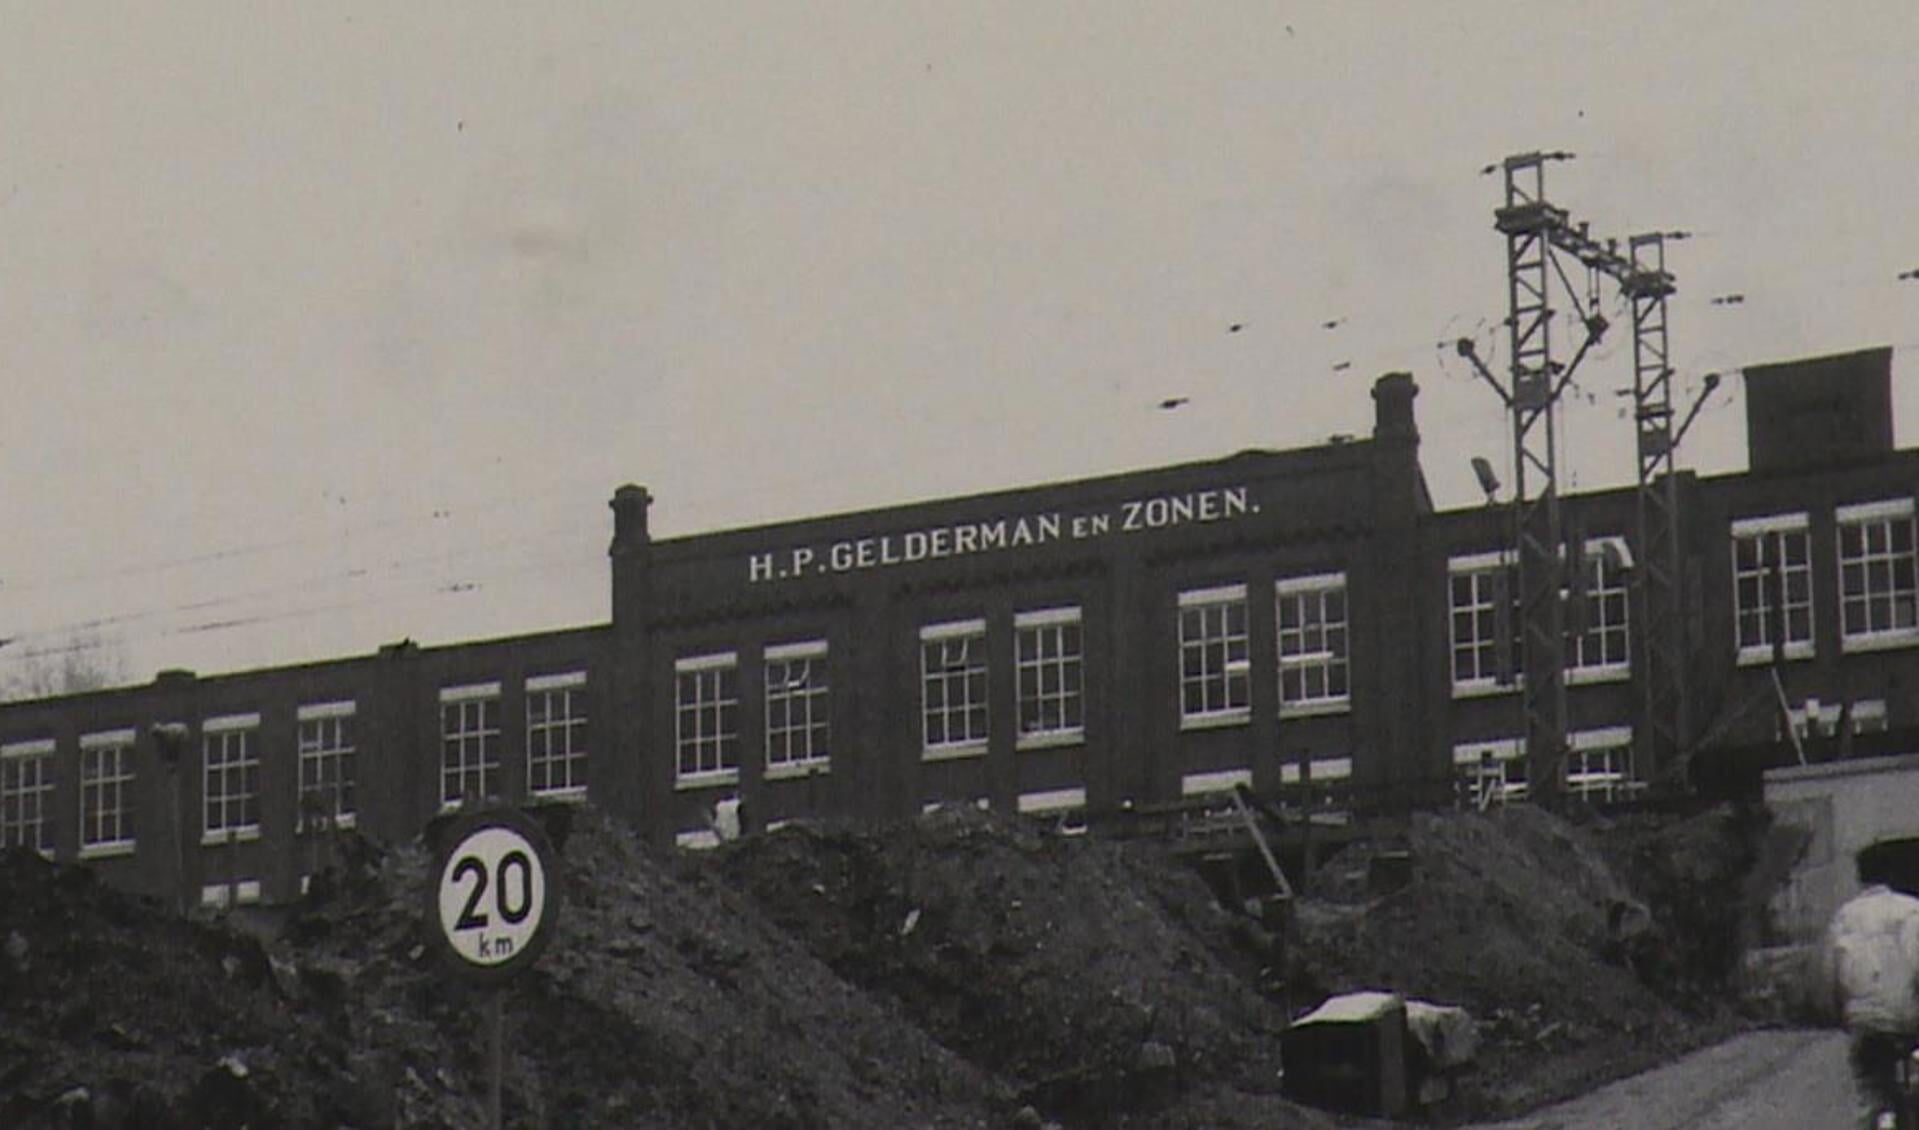 De H.P. Gelderman & Zonen fabriek in vroeger tijden. Hoewel het bedrijf er niet meer is, floreert de stichting tot de dag van vandaag.